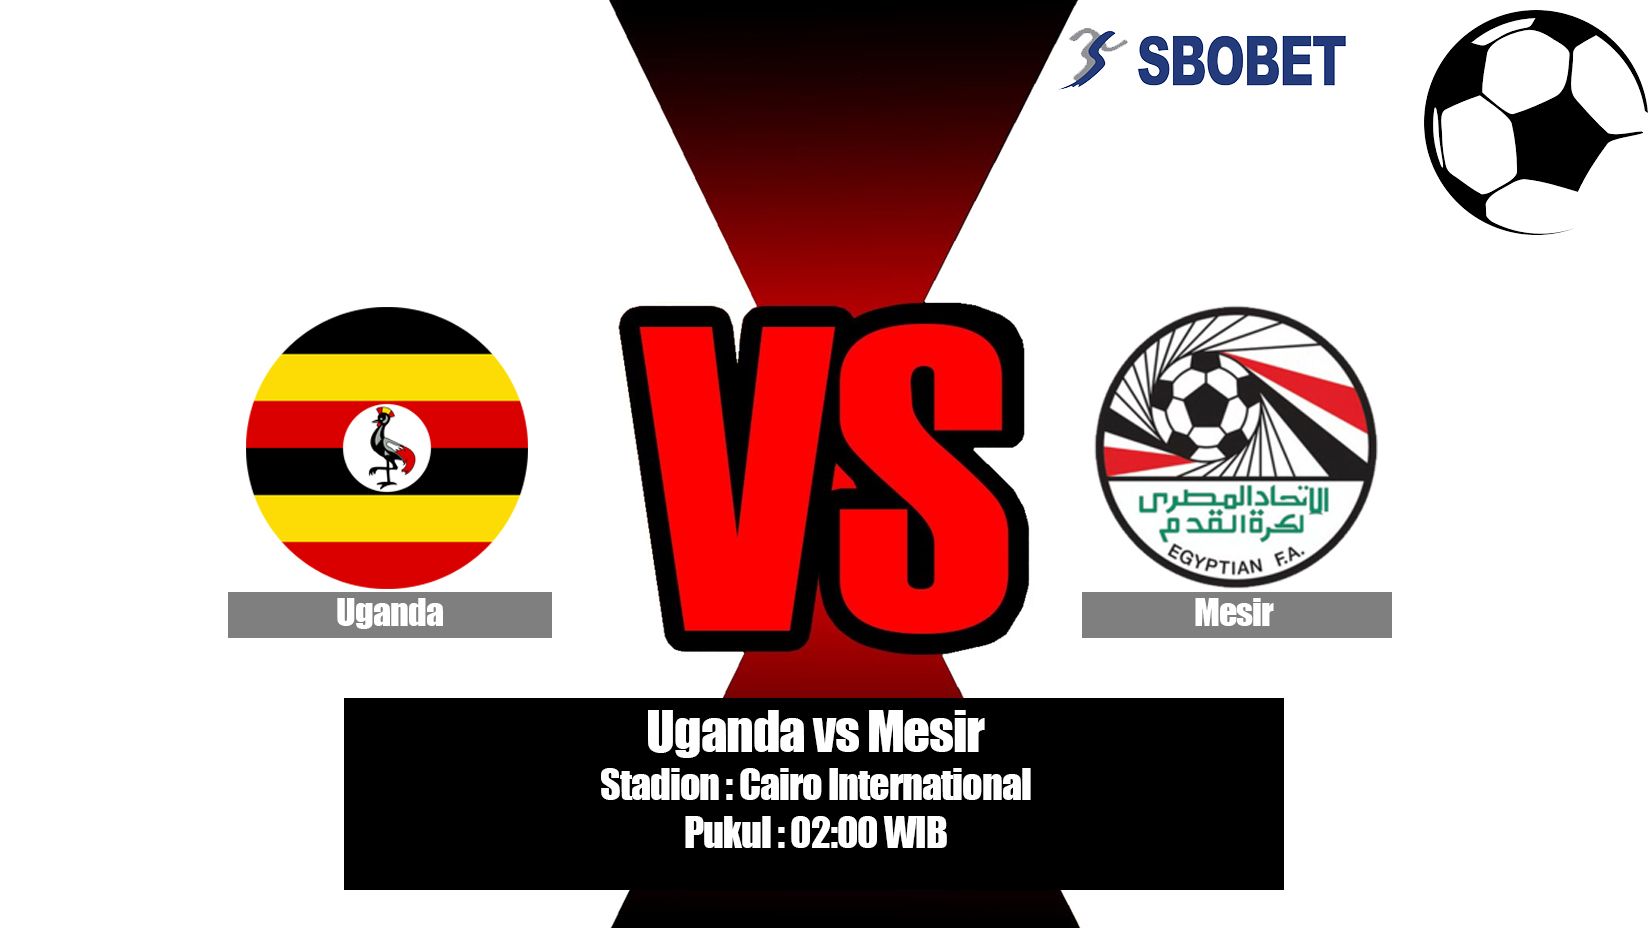 Prediksi Bola Uganda vs Mesir 1 Juli 2019